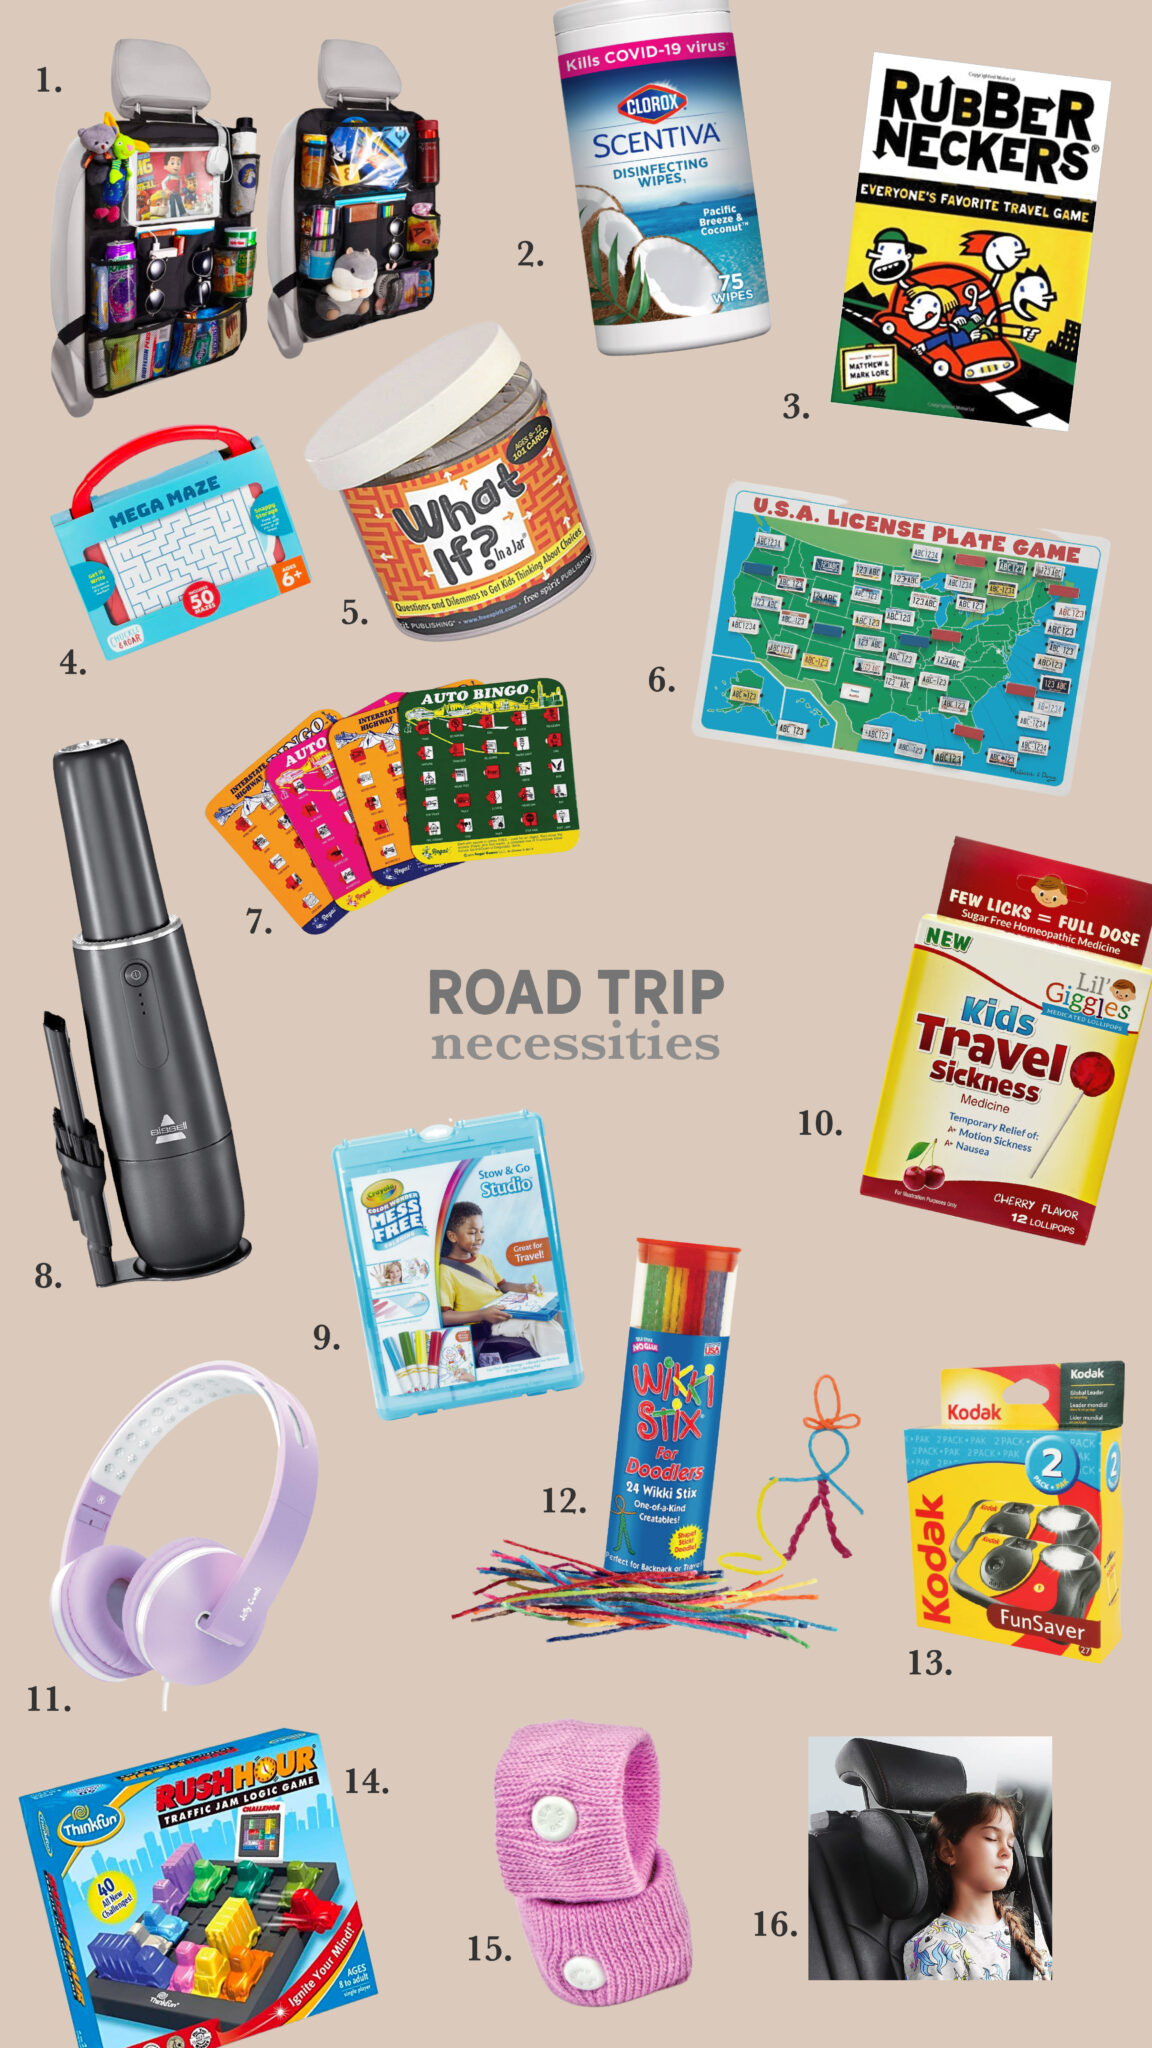 road-trip-activities-for-kids - By Lauren M